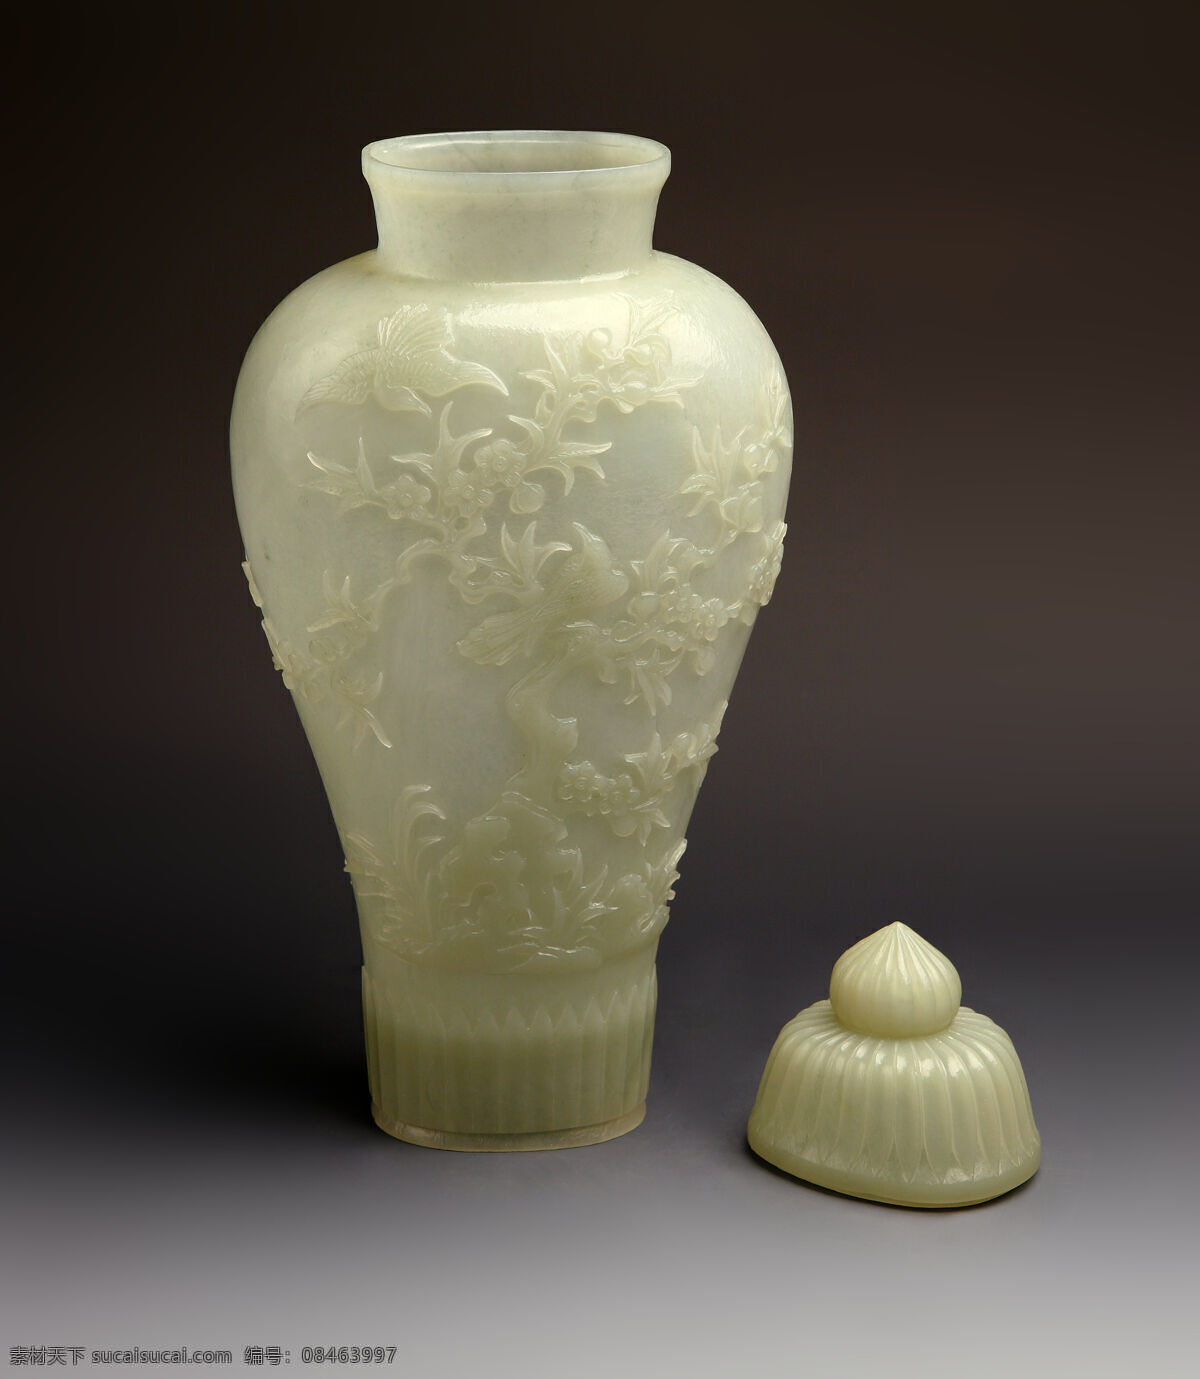 玉器 喜鹊 登 梅青 玉带 钮 瓶 玉 古董 收藏 玉石 石雕 玉雕 白玉 奇石 艺术 文化 传统文化 文化艺术